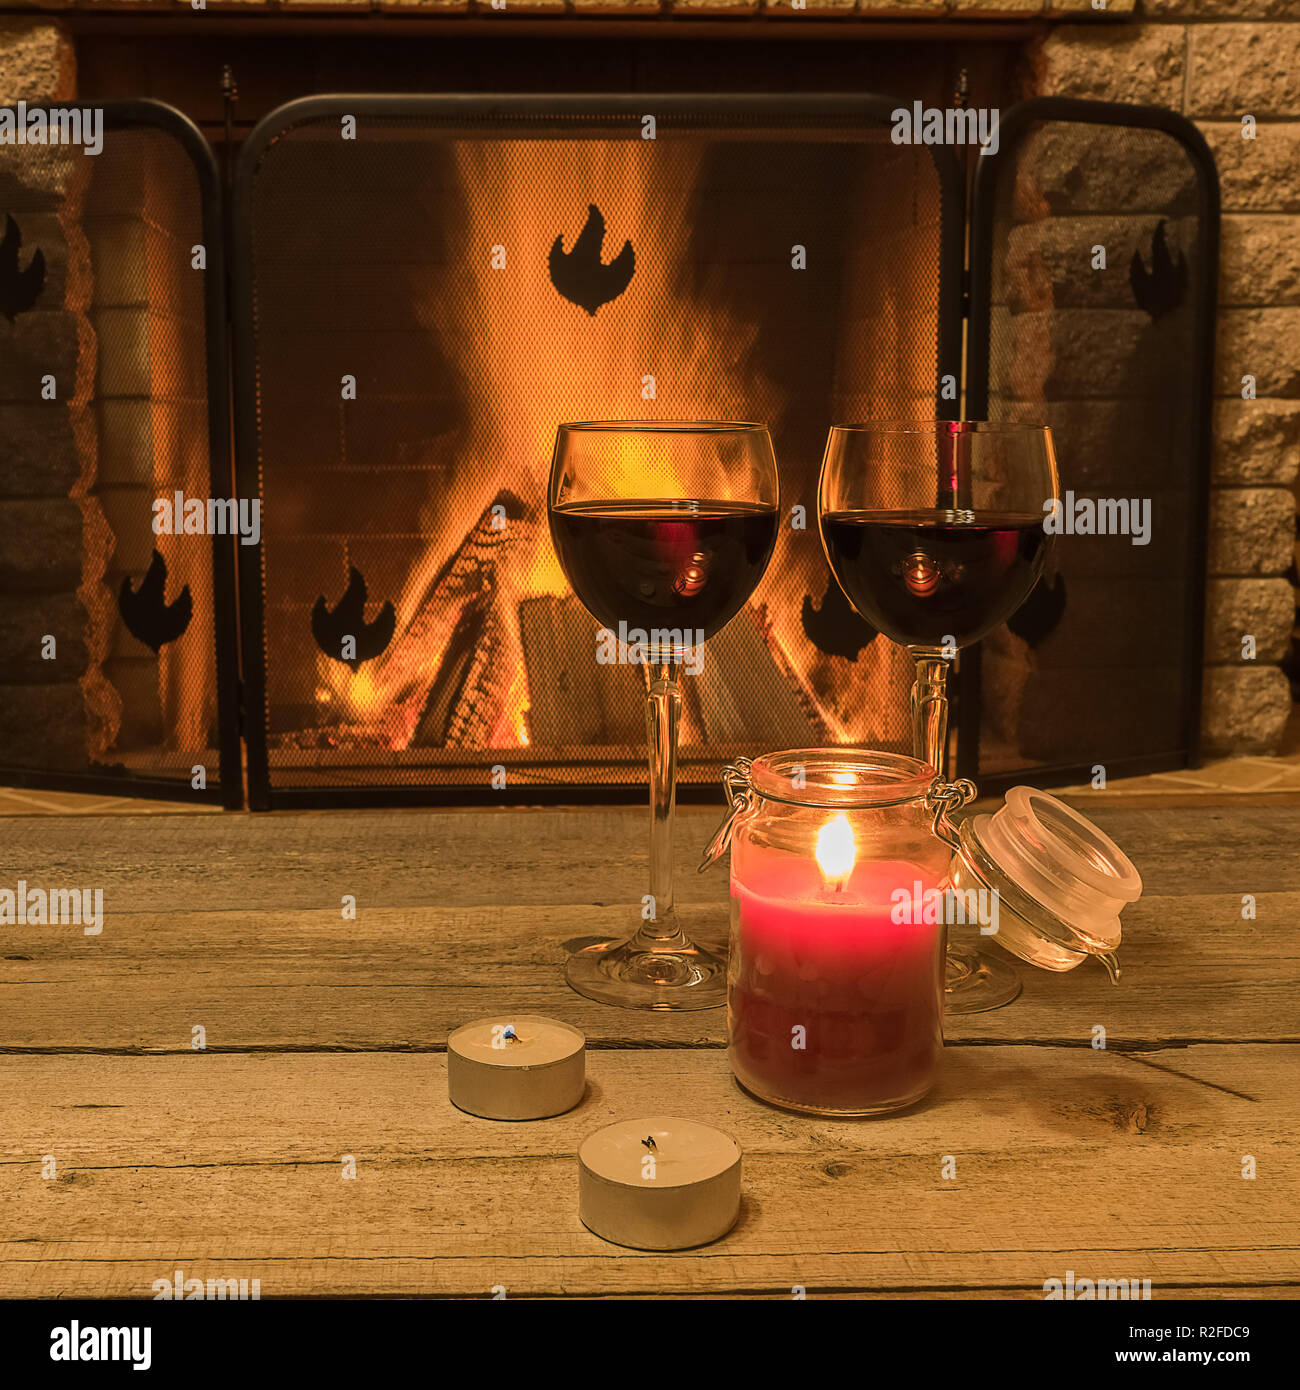 Ruhige Szene vor dem gemütlichen Kamin, mit zwei Gläsern Rotwein und Kerzen, im Landhaus, im Winter Urlaub. Stockfoto